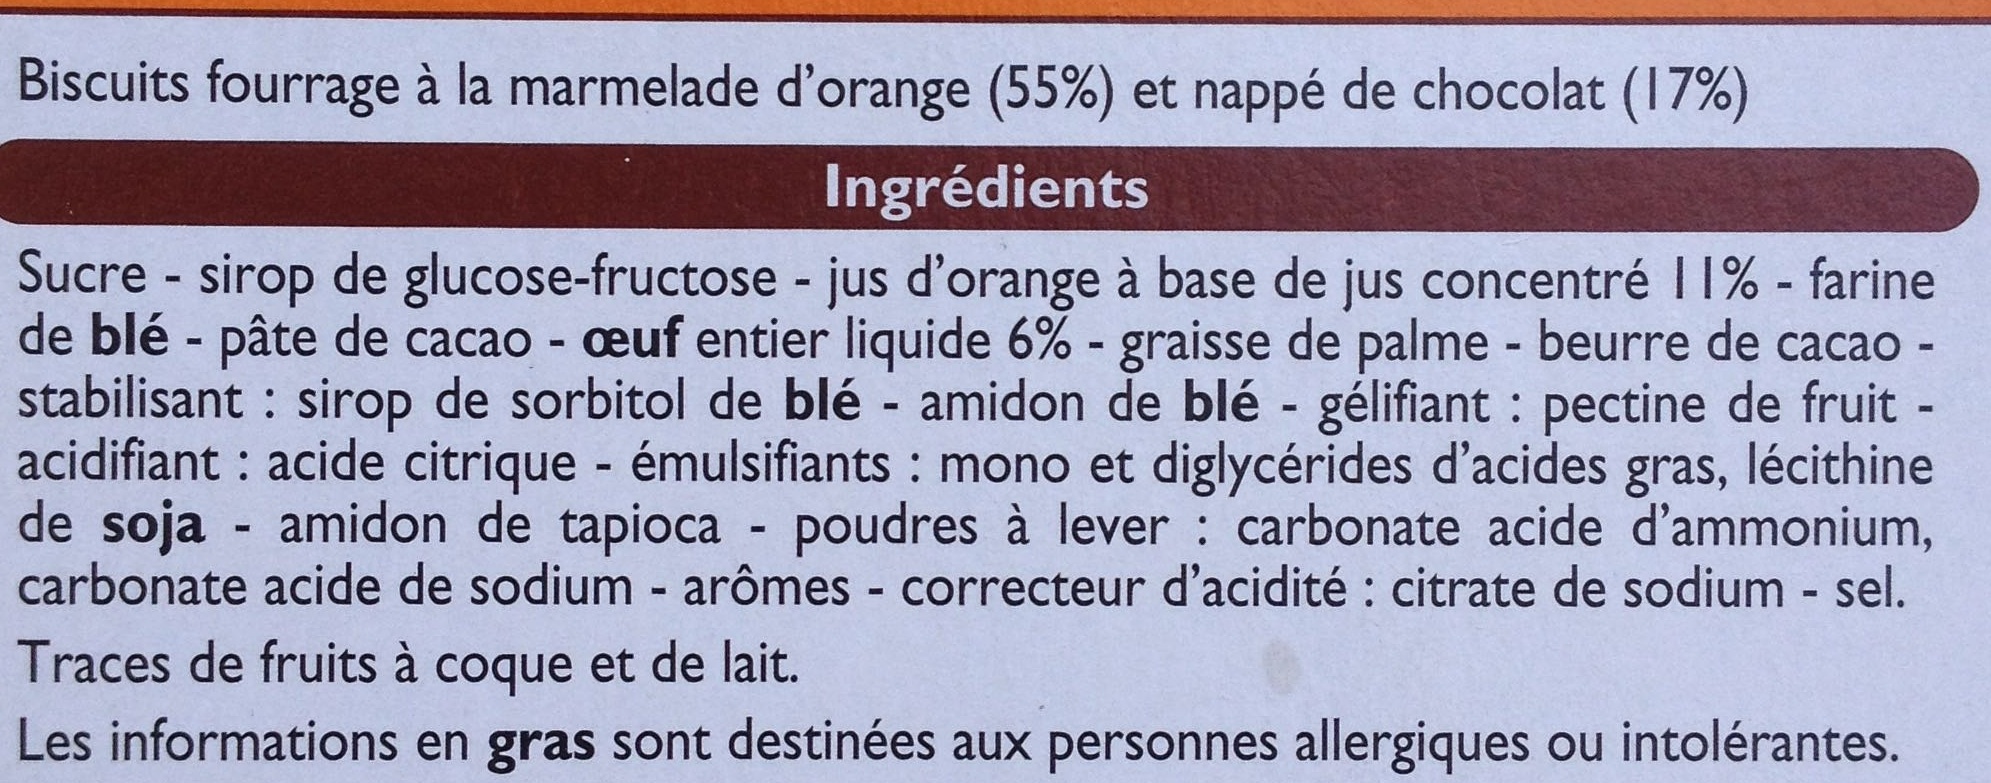 Biscuits fourrés orange - Ingrédients